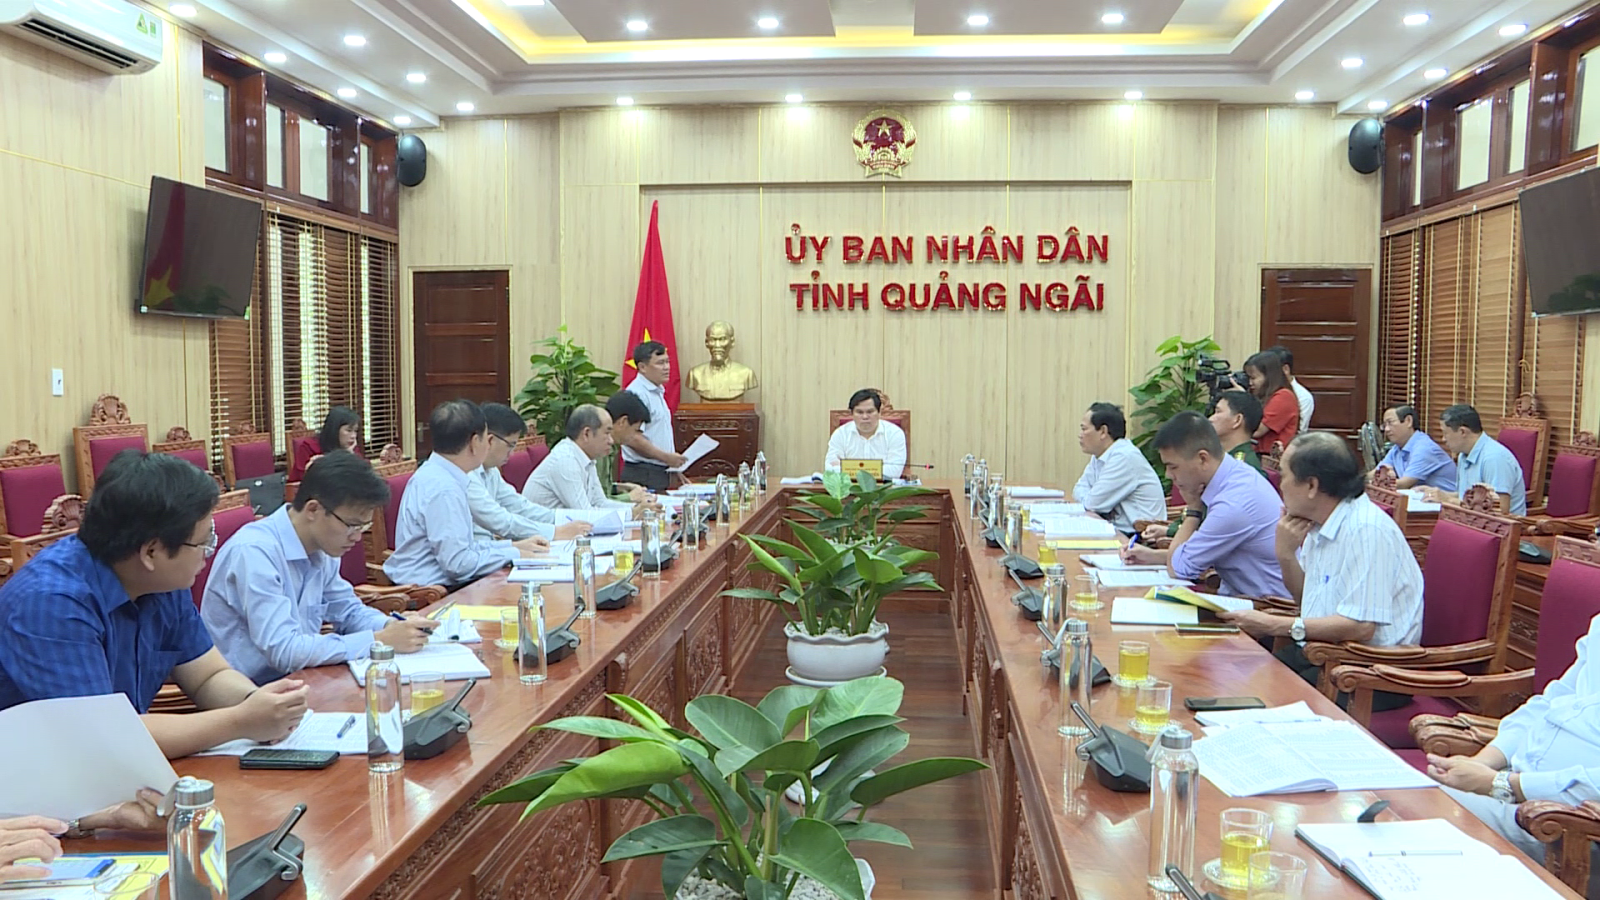 Phó Chủ tịch UBND tỉnh Trần Phước Hiền, Trưởng Ban Chỉ đạo về chống khai thác hải sản bất hợp pháp, không báo cáo và không theo quy định tỉnh Quảng Ngãi chủ trì cuộc họp